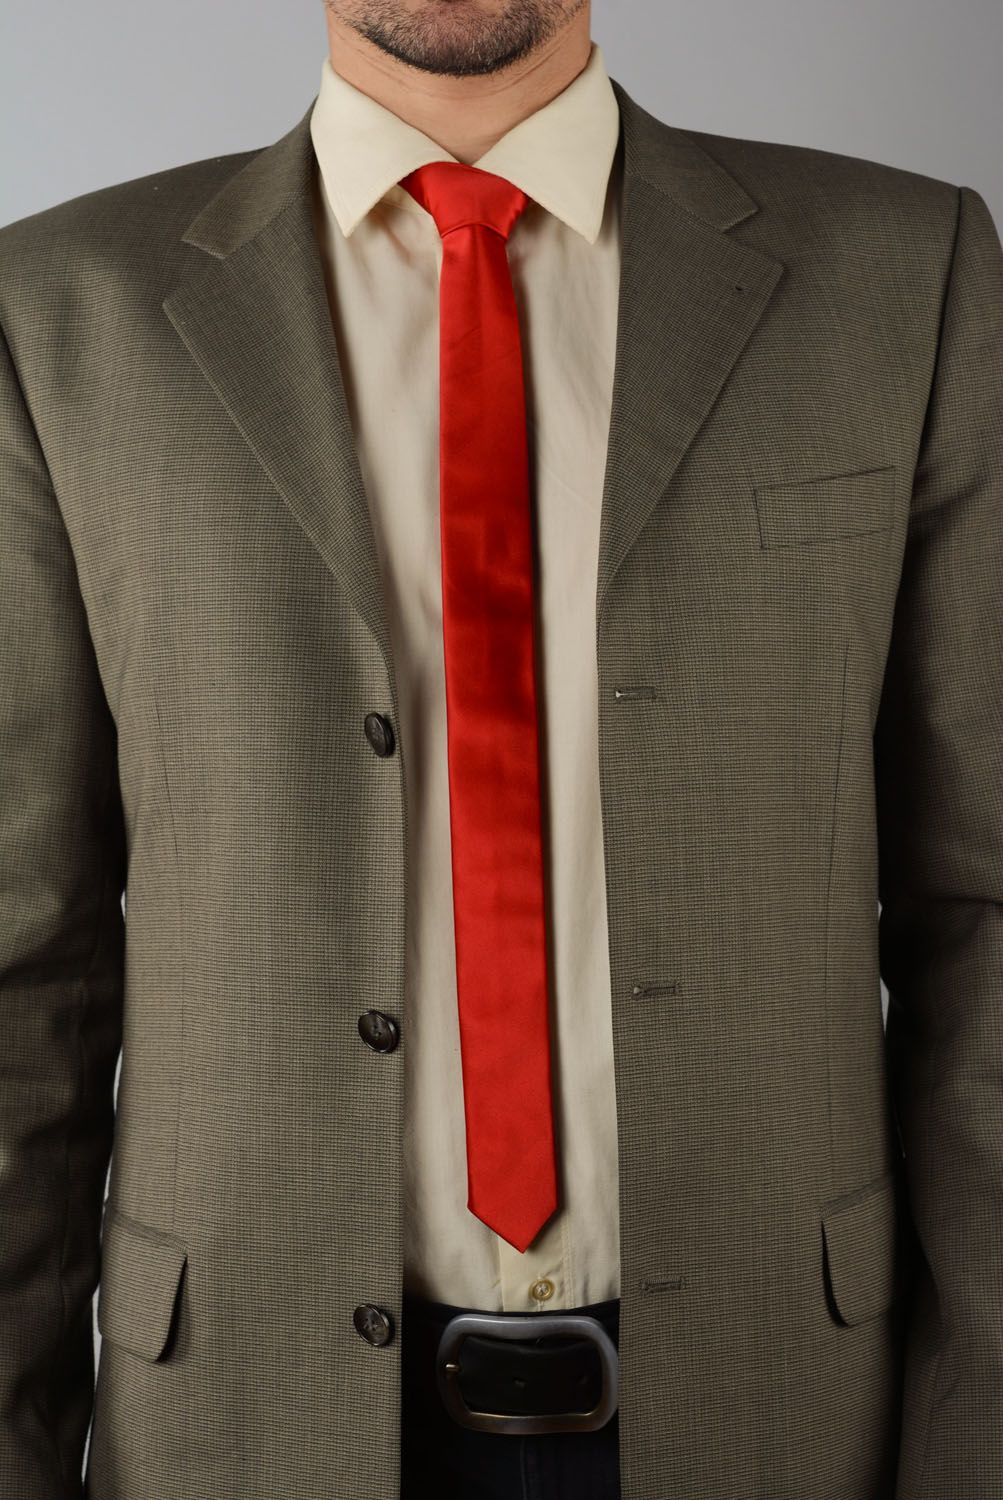 Красный галстук  фото 1